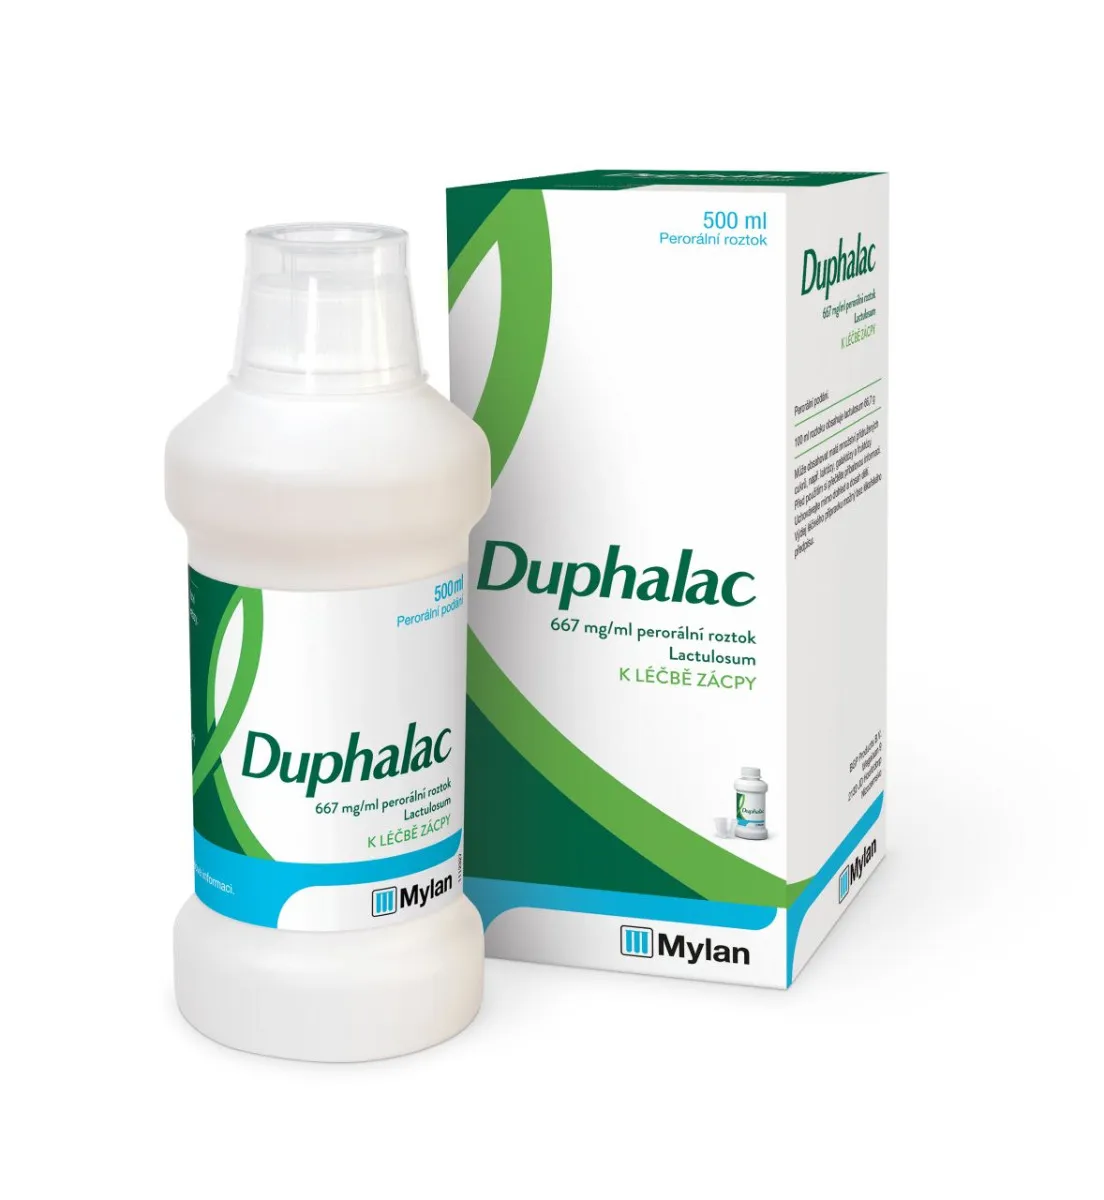 Duphalac 667 mg/ml